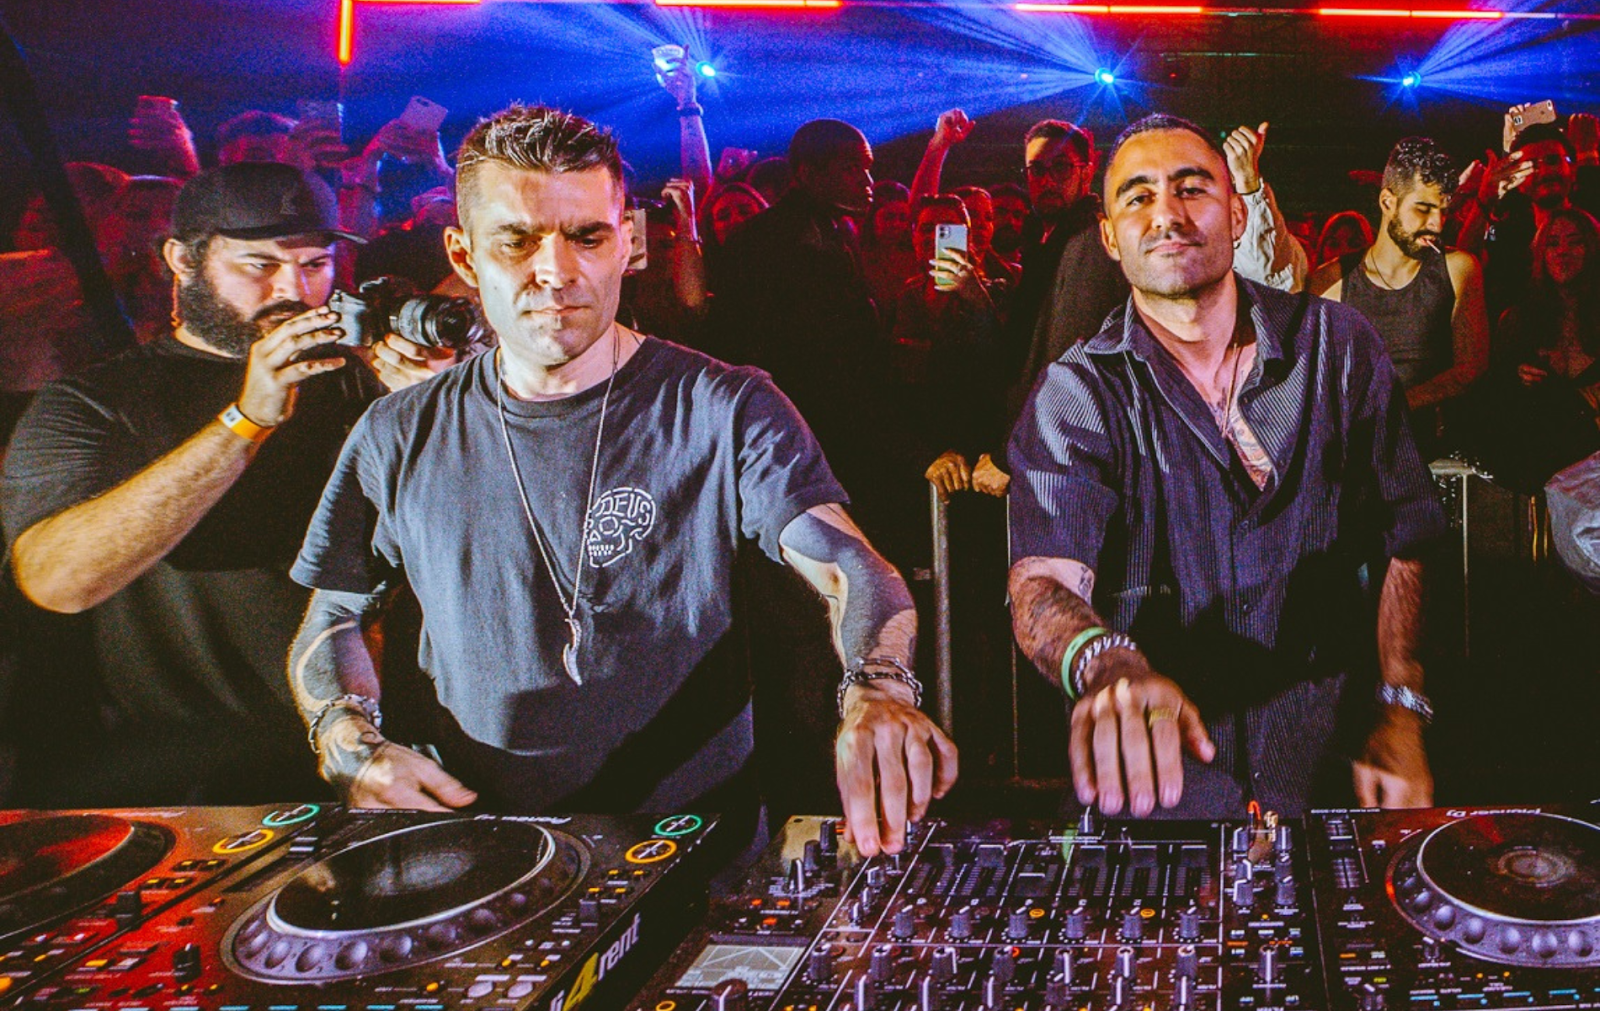 Viot e o DJ convidado da Gabe All Night Long em Curitiba neste sabado POP CYBER